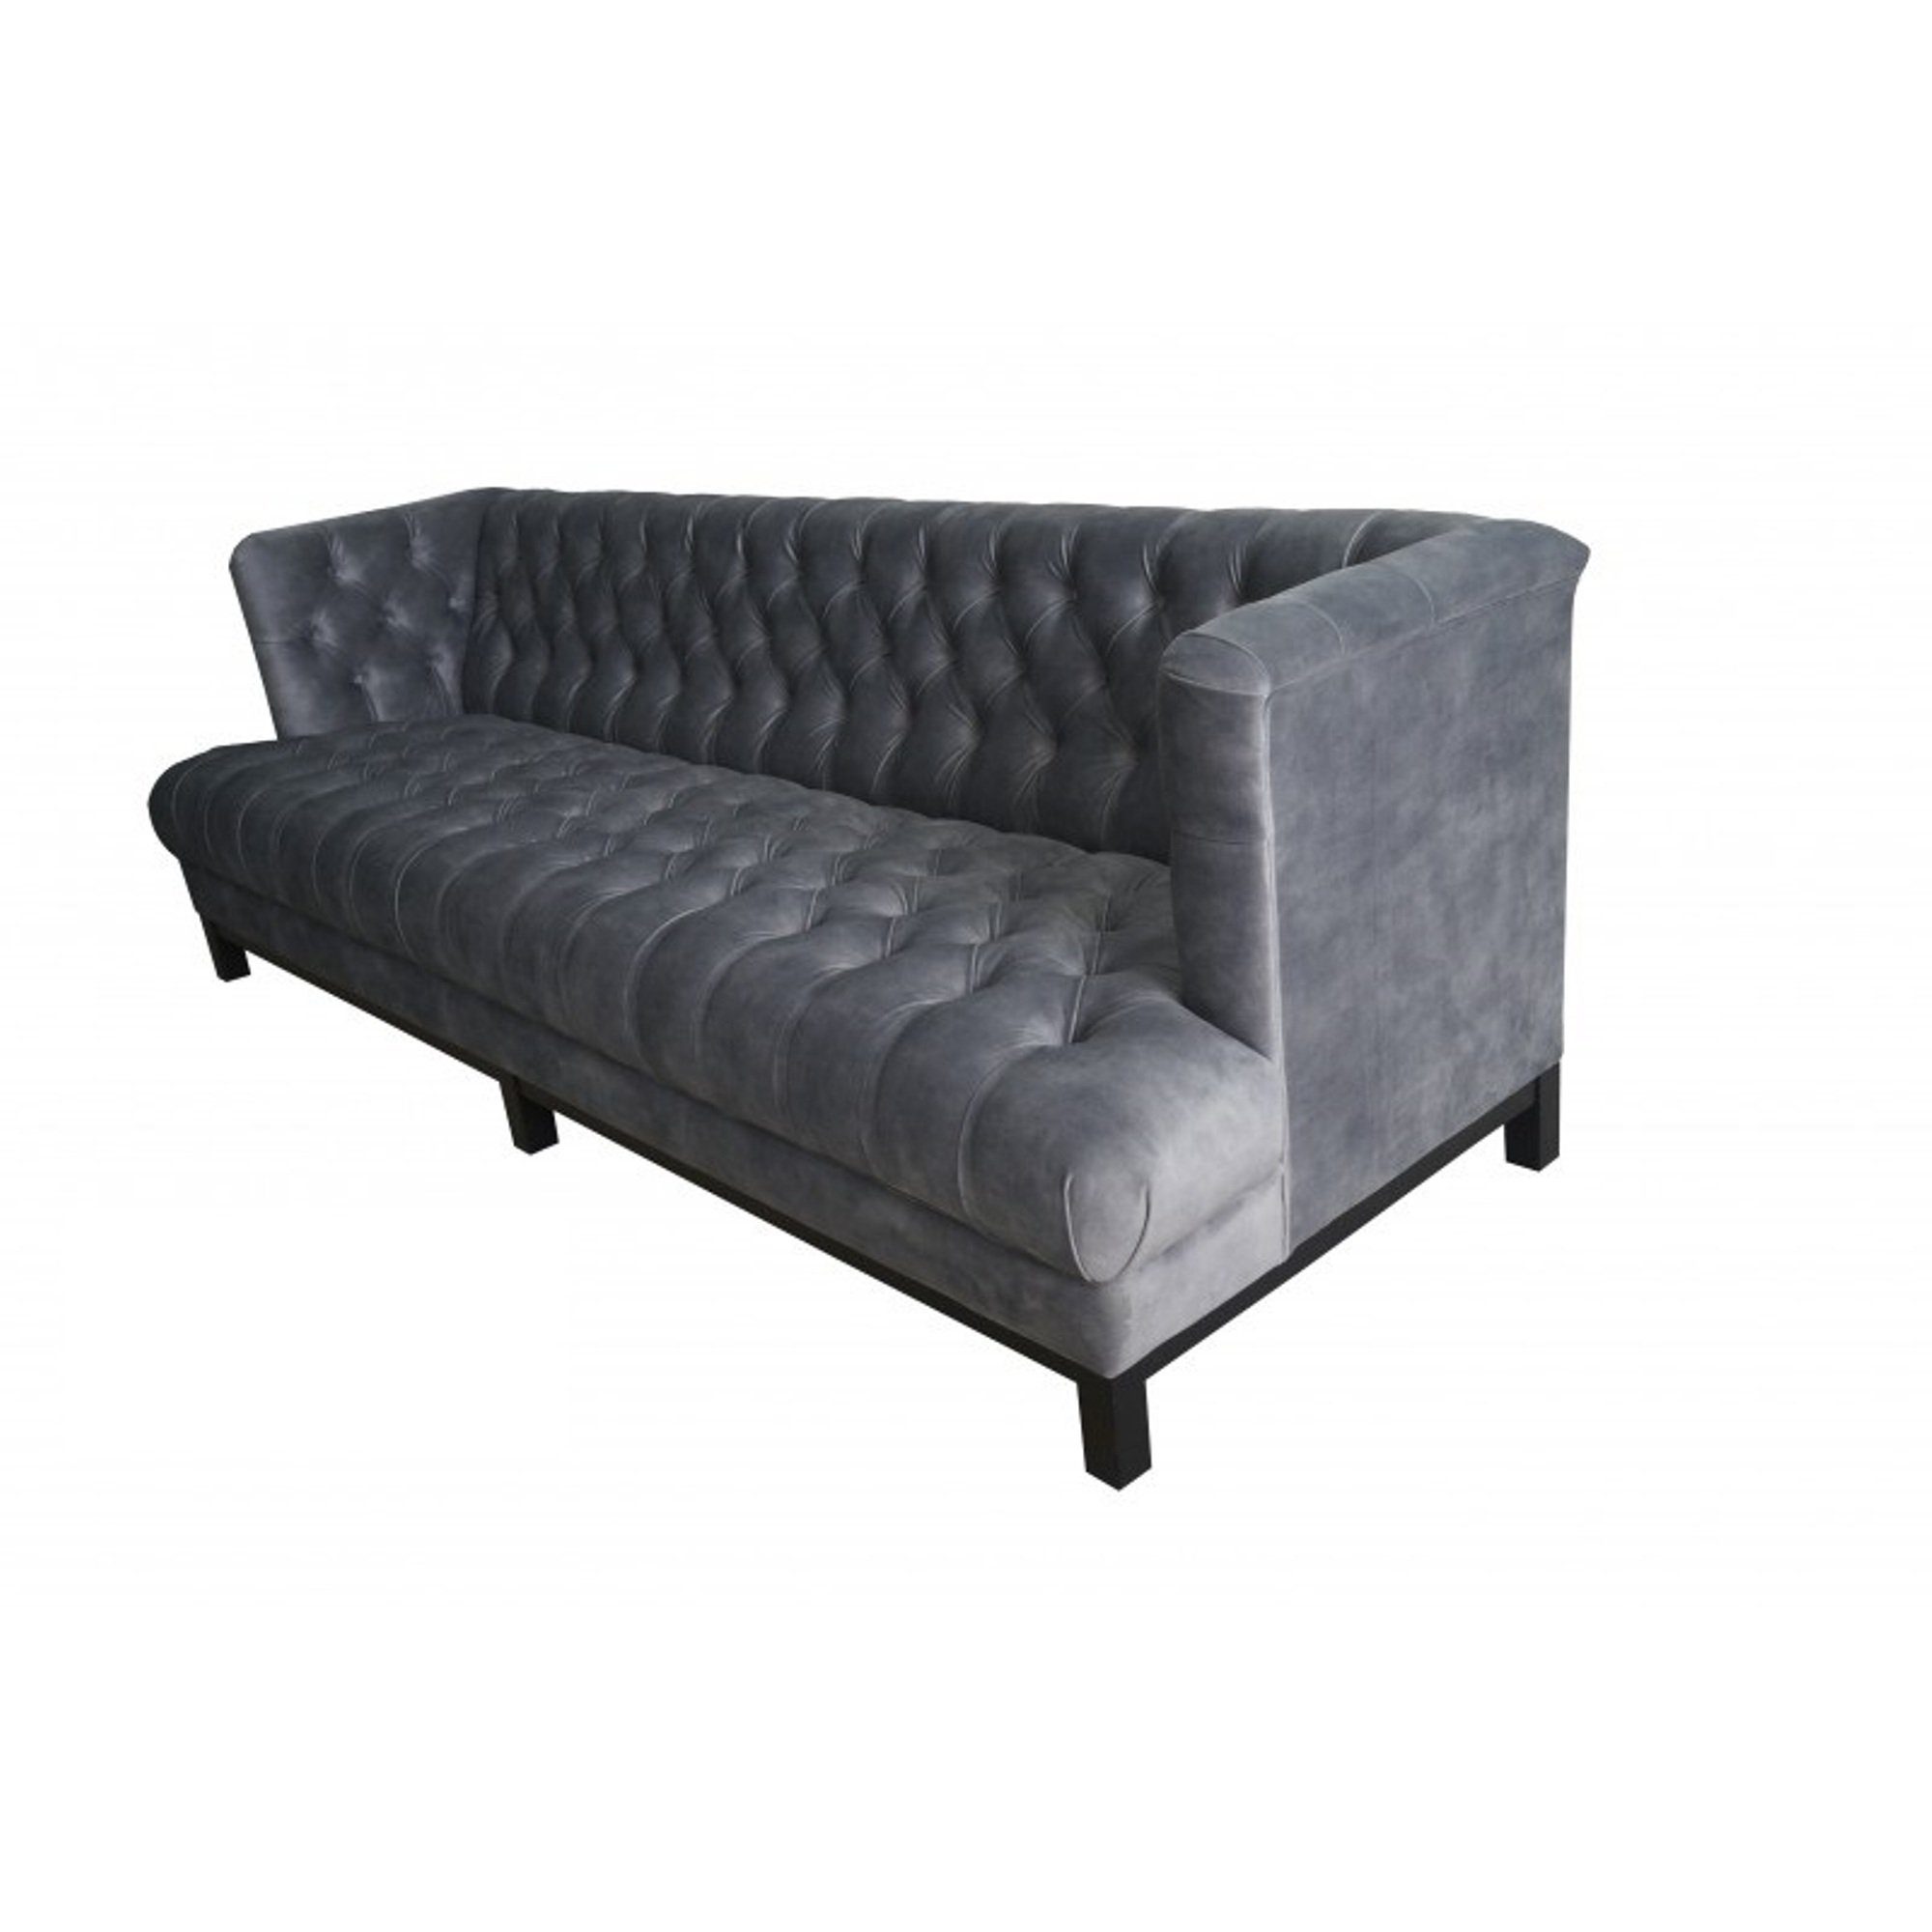 JVmoebel Sofa Moderner Dreisitzer Luxus Made Grau Neu, stilvoll in Europe Chesterfield